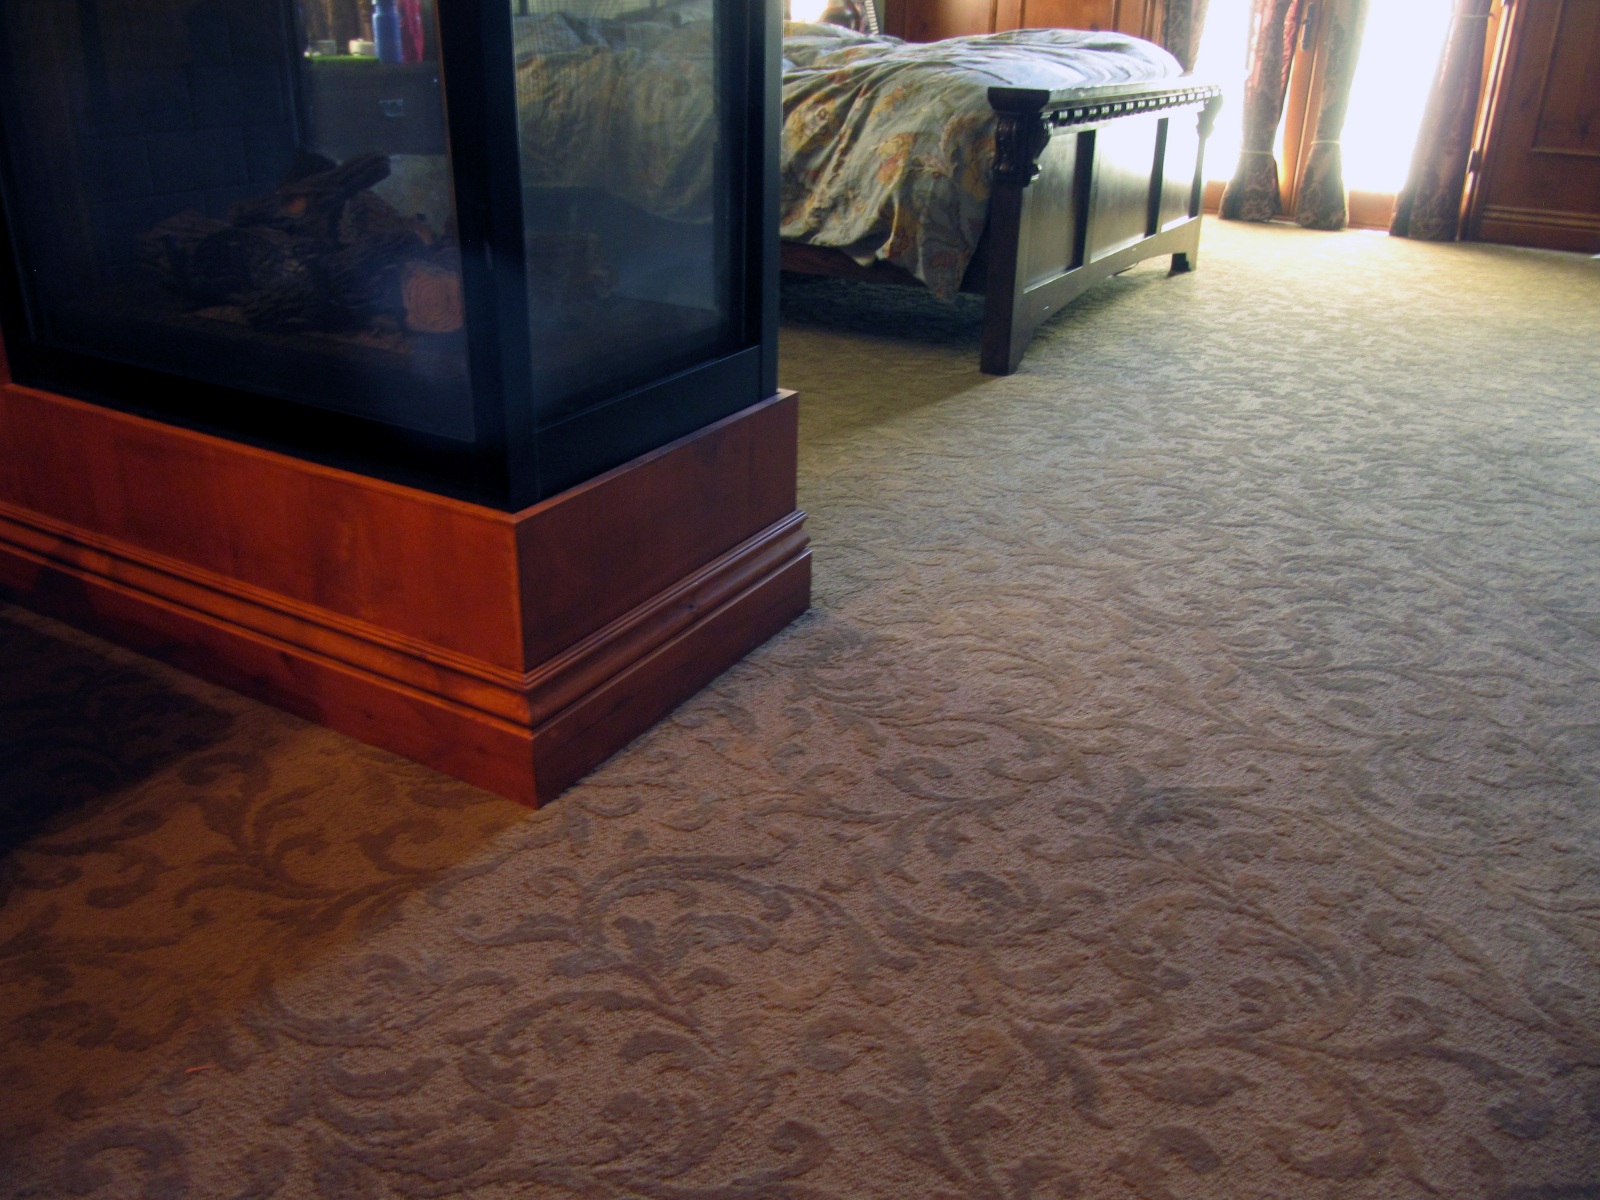 Patterned Carpet